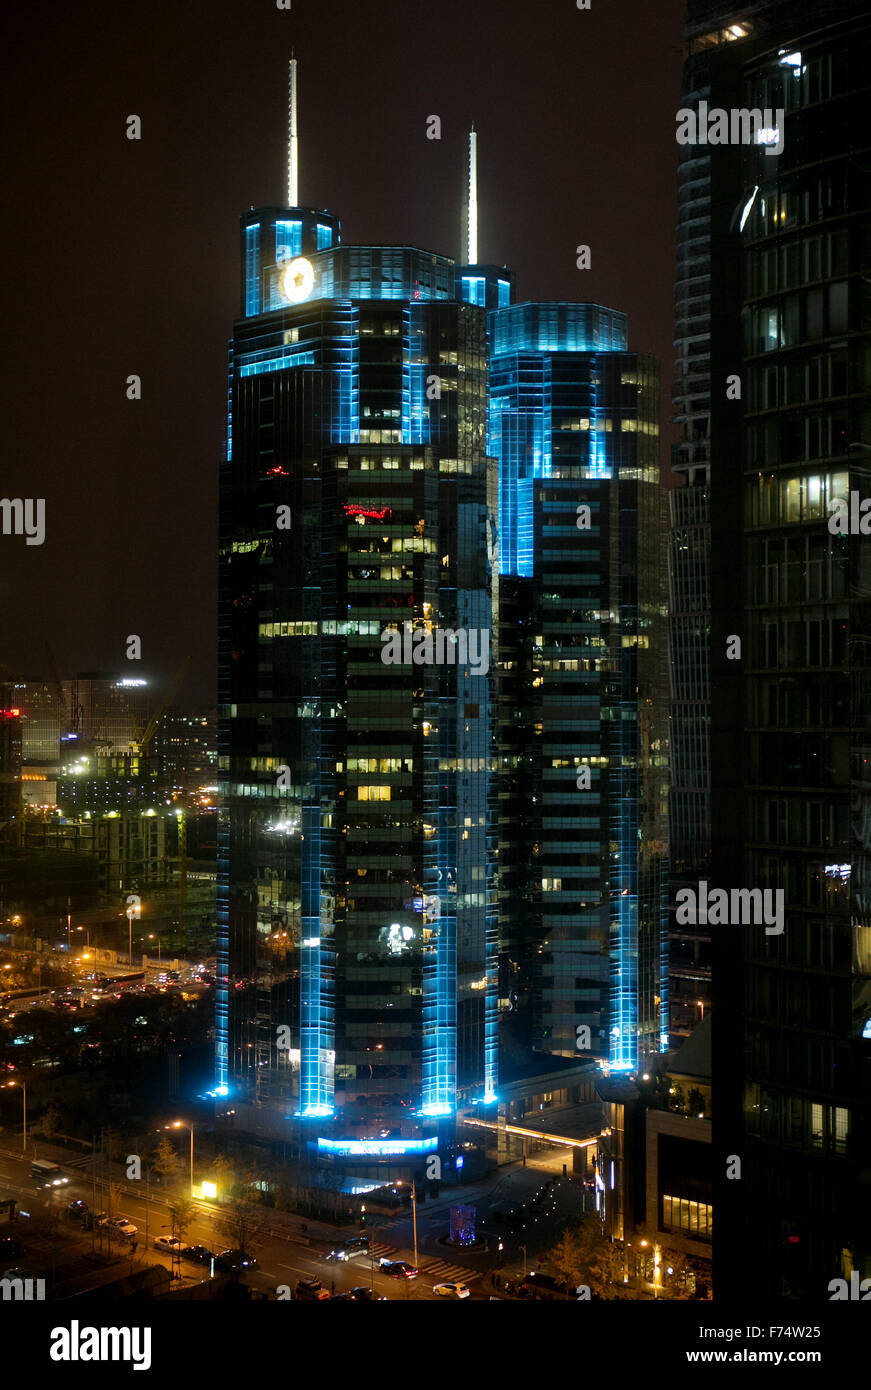 Grattacielo nel quartiere finanziario del centro cittadino di Pechino, Cina illuminato con luci blu notte Foto Stock